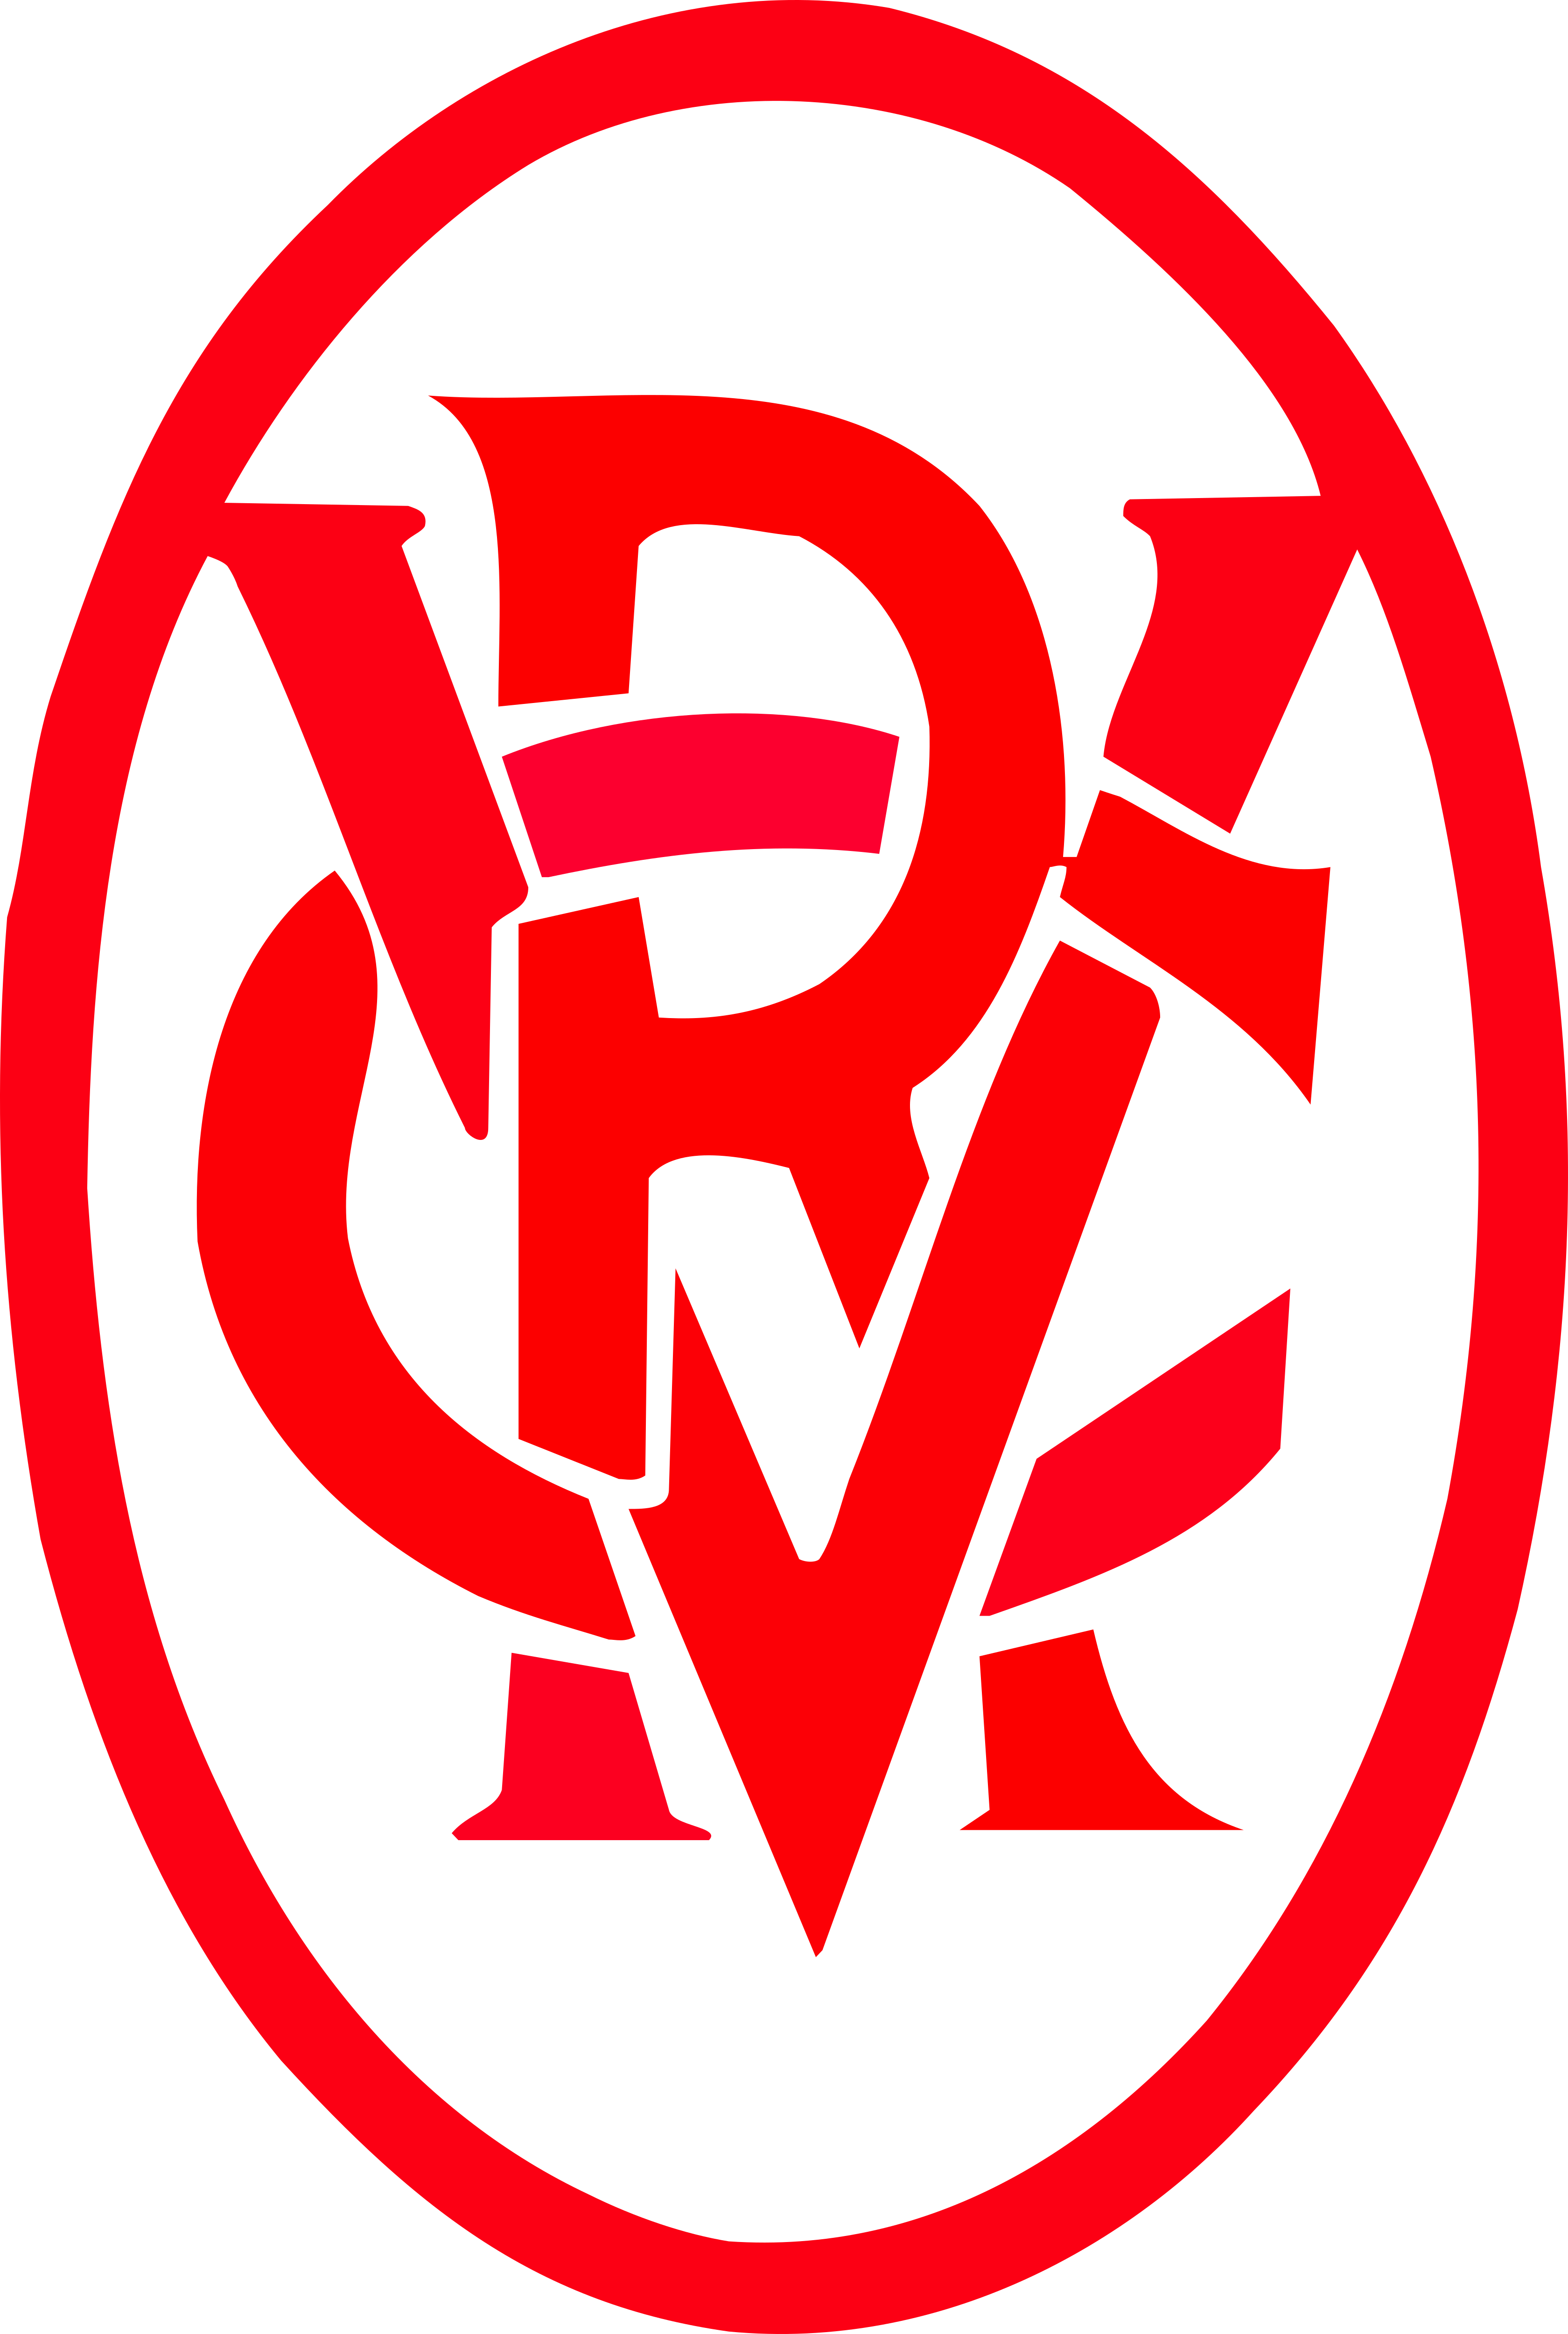 Victoria Racing Club – Logos Download